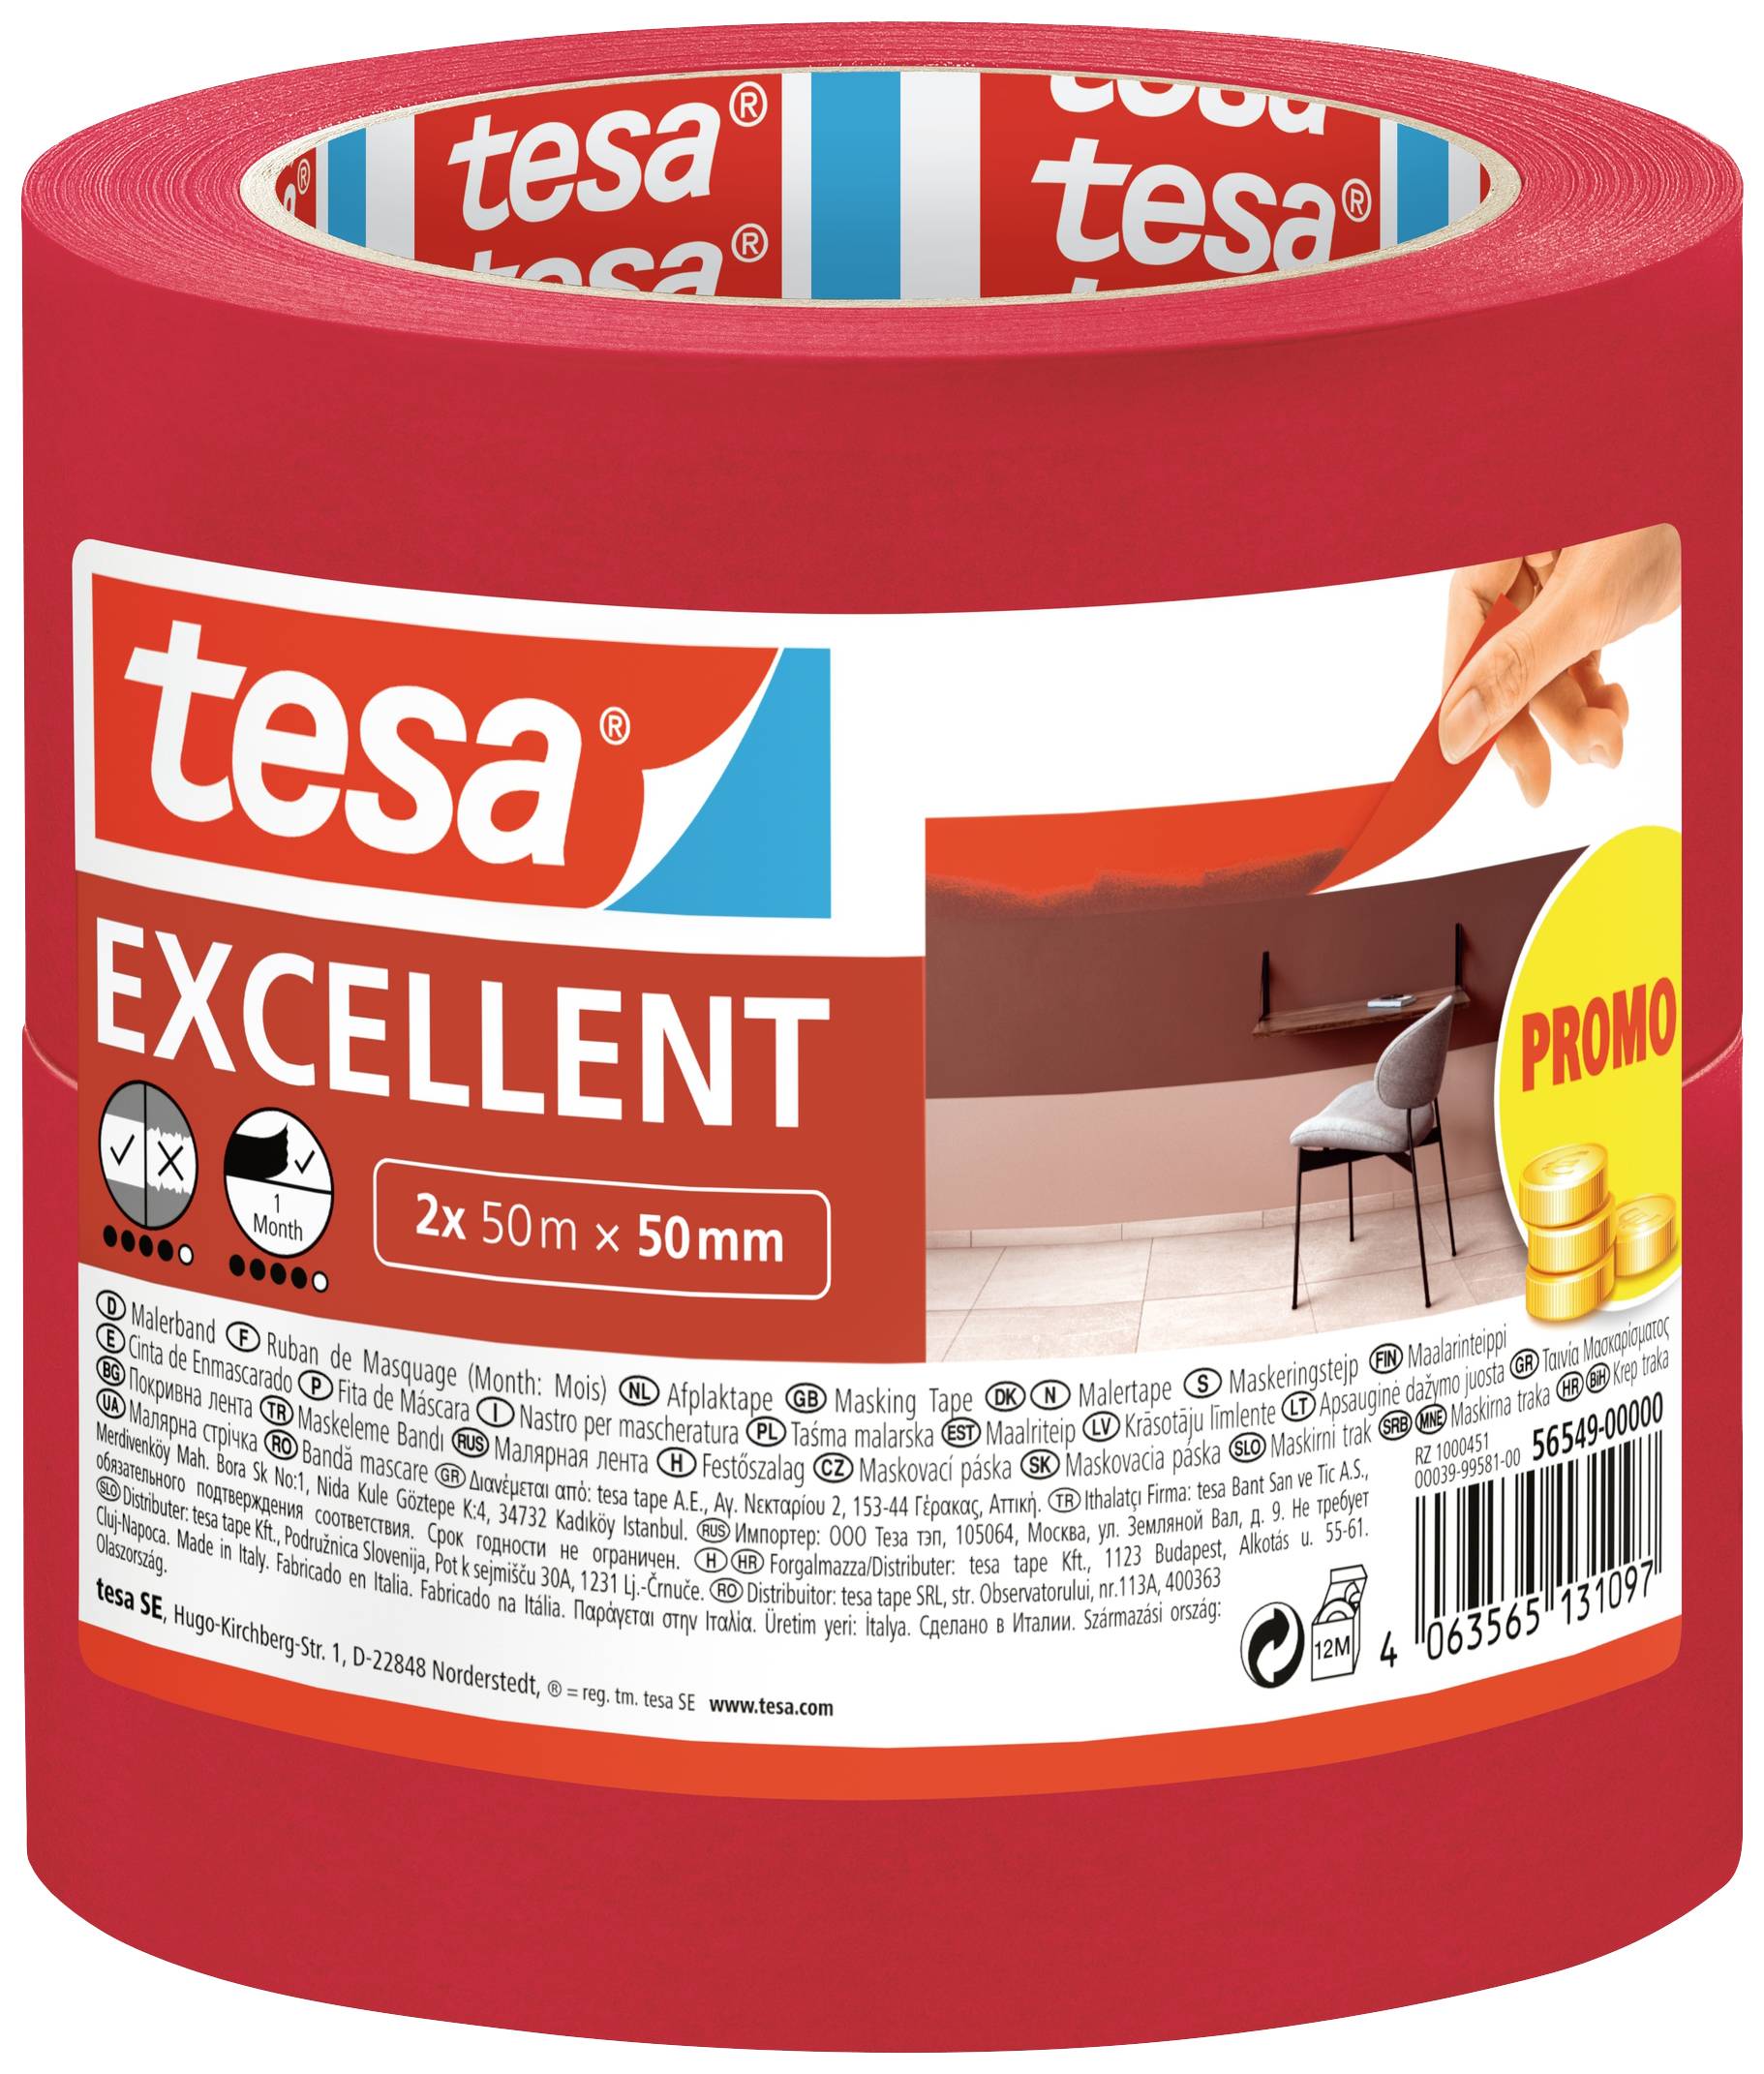 TESA EXCELLENT 56549-00000-00 Kreppband Rot (L x B) 50 m x 50 mm 2 St.